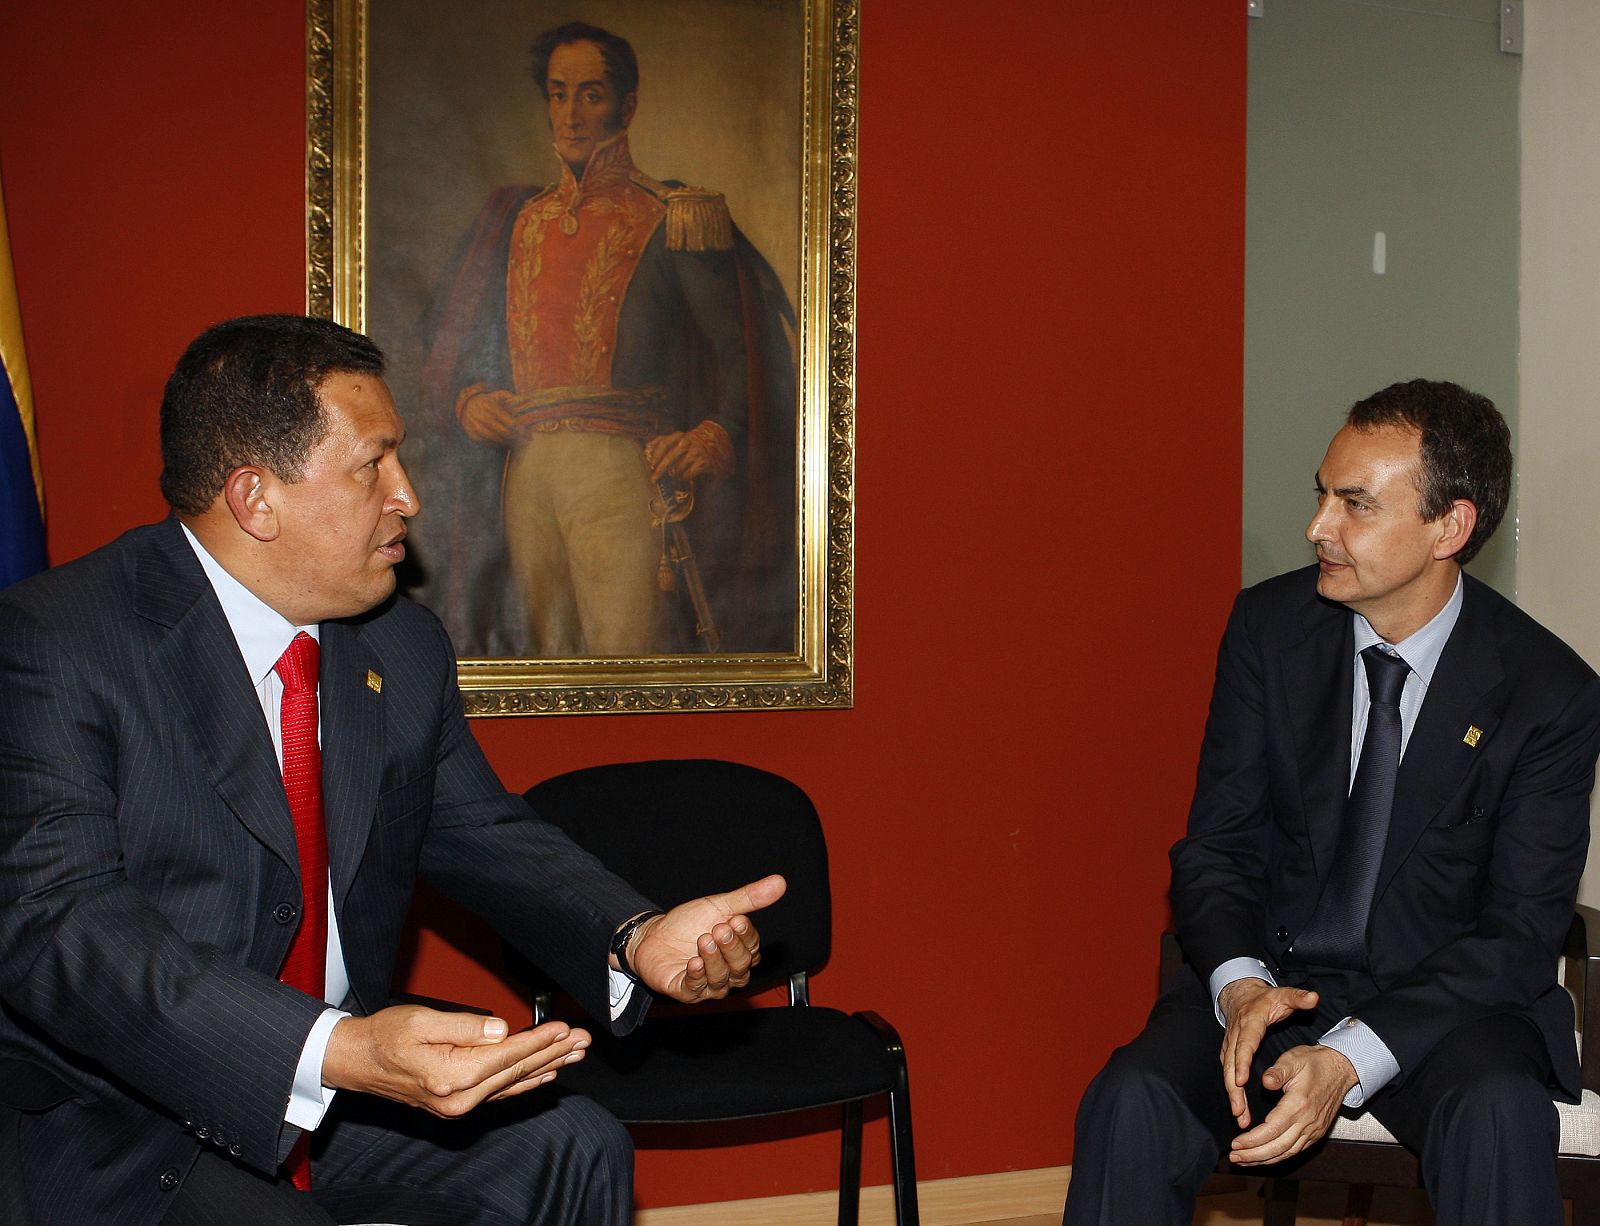 El jefe del Gobierno español, José Luis Rodríguez Zapatero, conversa con el presidente de Venezuela, Hugo Chávez, en el encuentro mantenido durante la Cumbre de Lima.